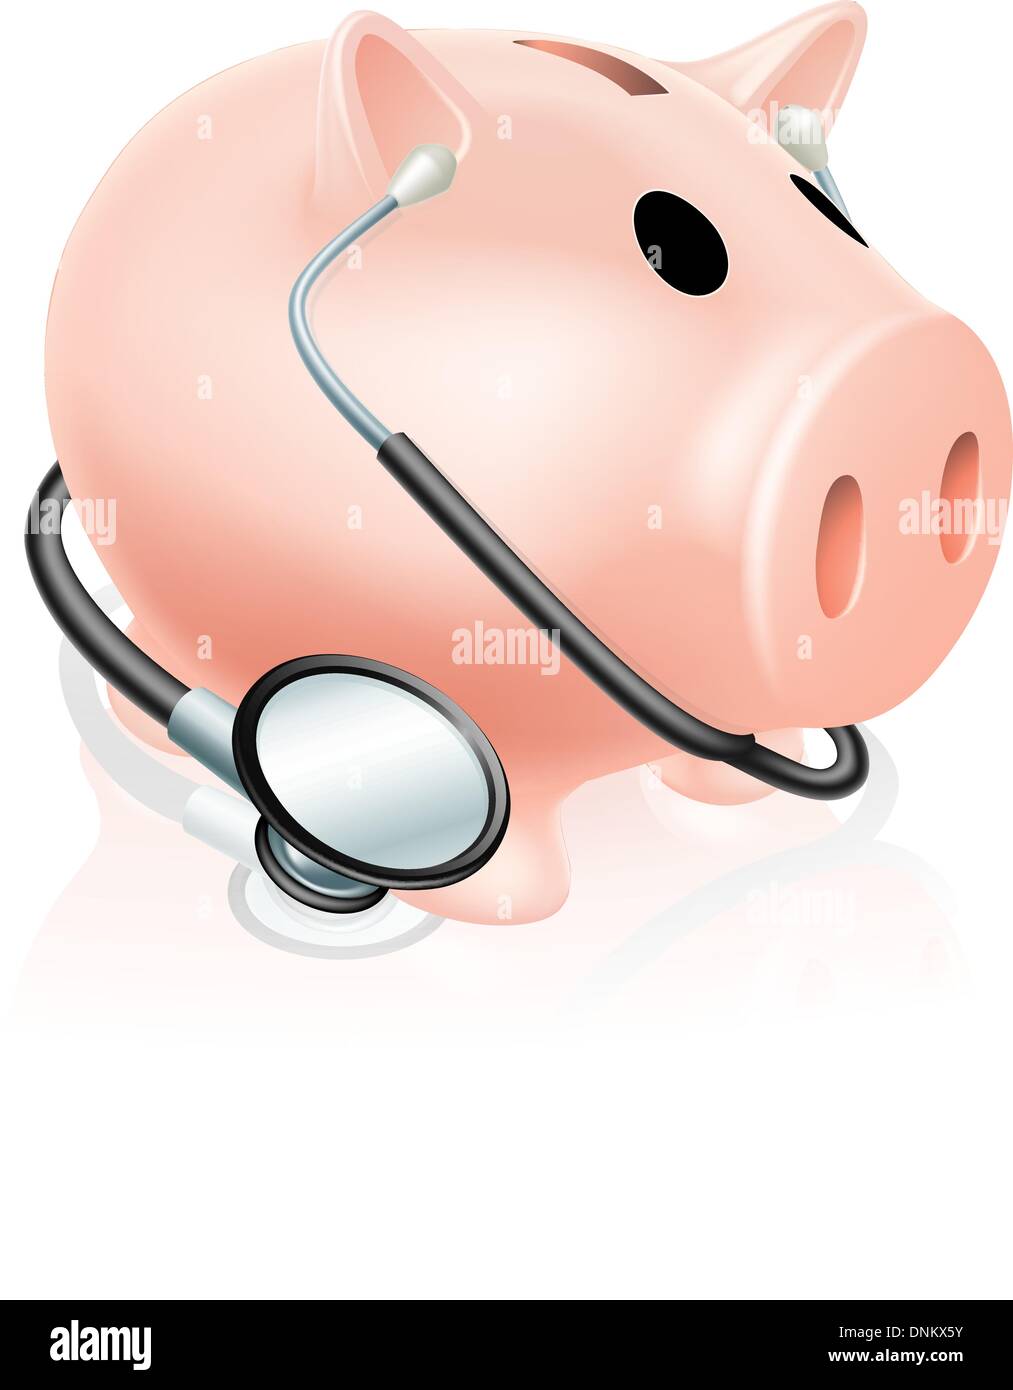 Stethoskop Sparschwein Konzept Abbildung im Zusammenhang mit Konzept für das Gesundheitswesen, Finanzen oder nehmen eine finanzielle Gesundheits-check Stock Vektor